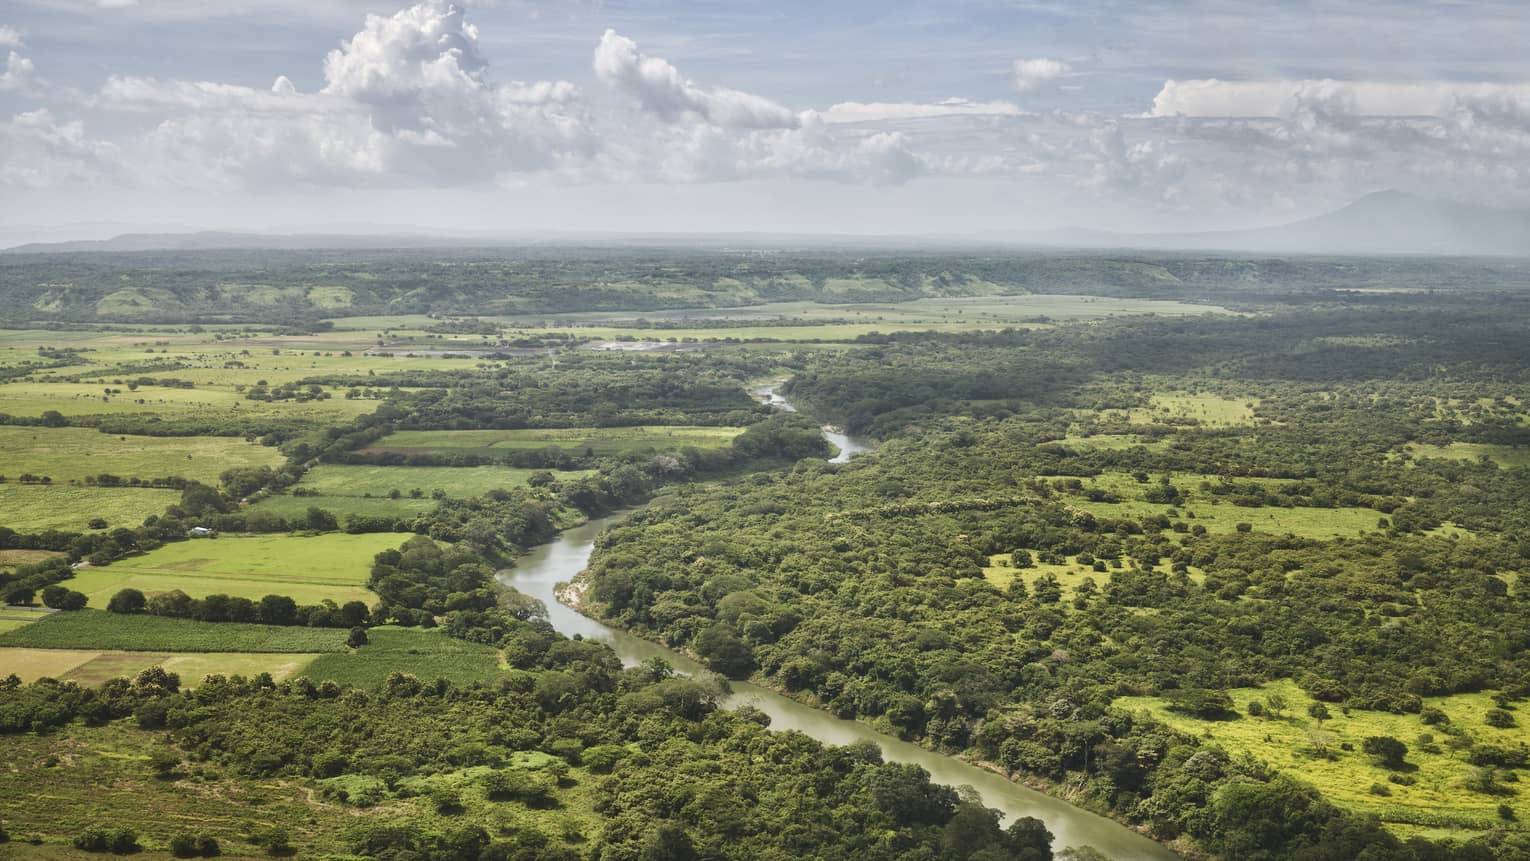 Aerial view of a river running through green farmland